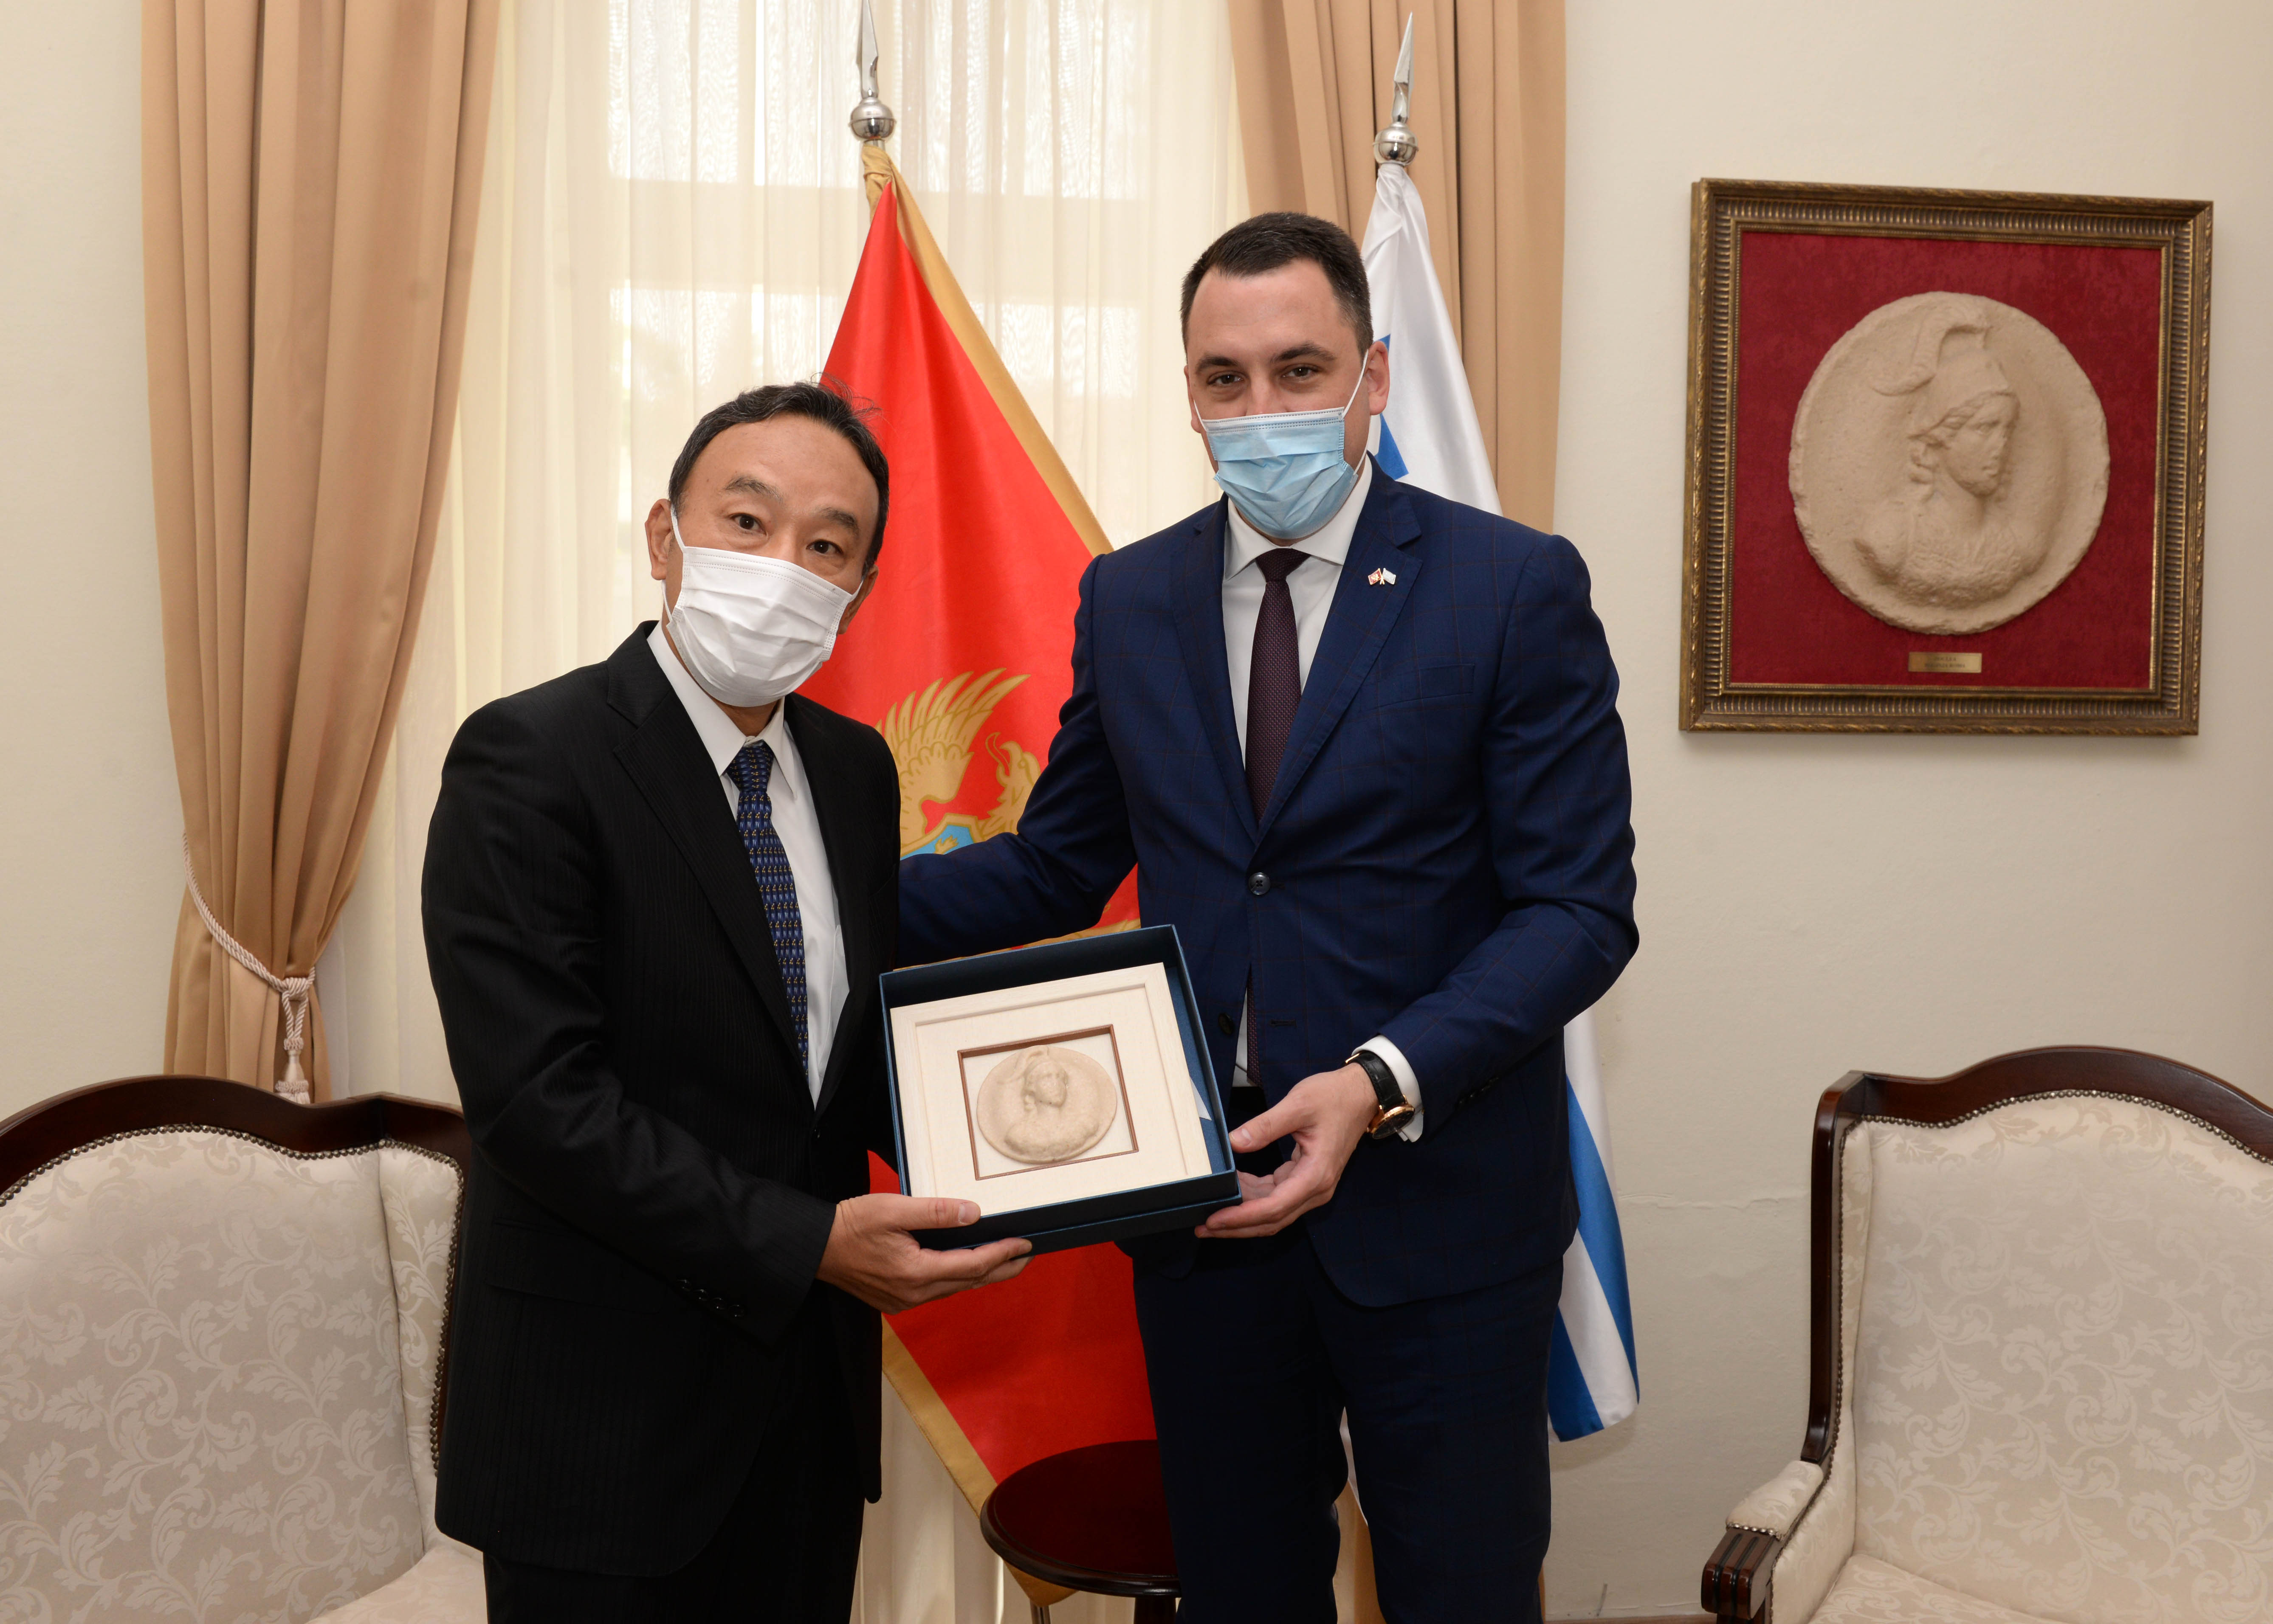 Gradonačelnik Vuković sa diplomatskim predstavnicima Japana, Izraela i Kazahstana: Podgorica poželjna destinacija za turiste i investitore